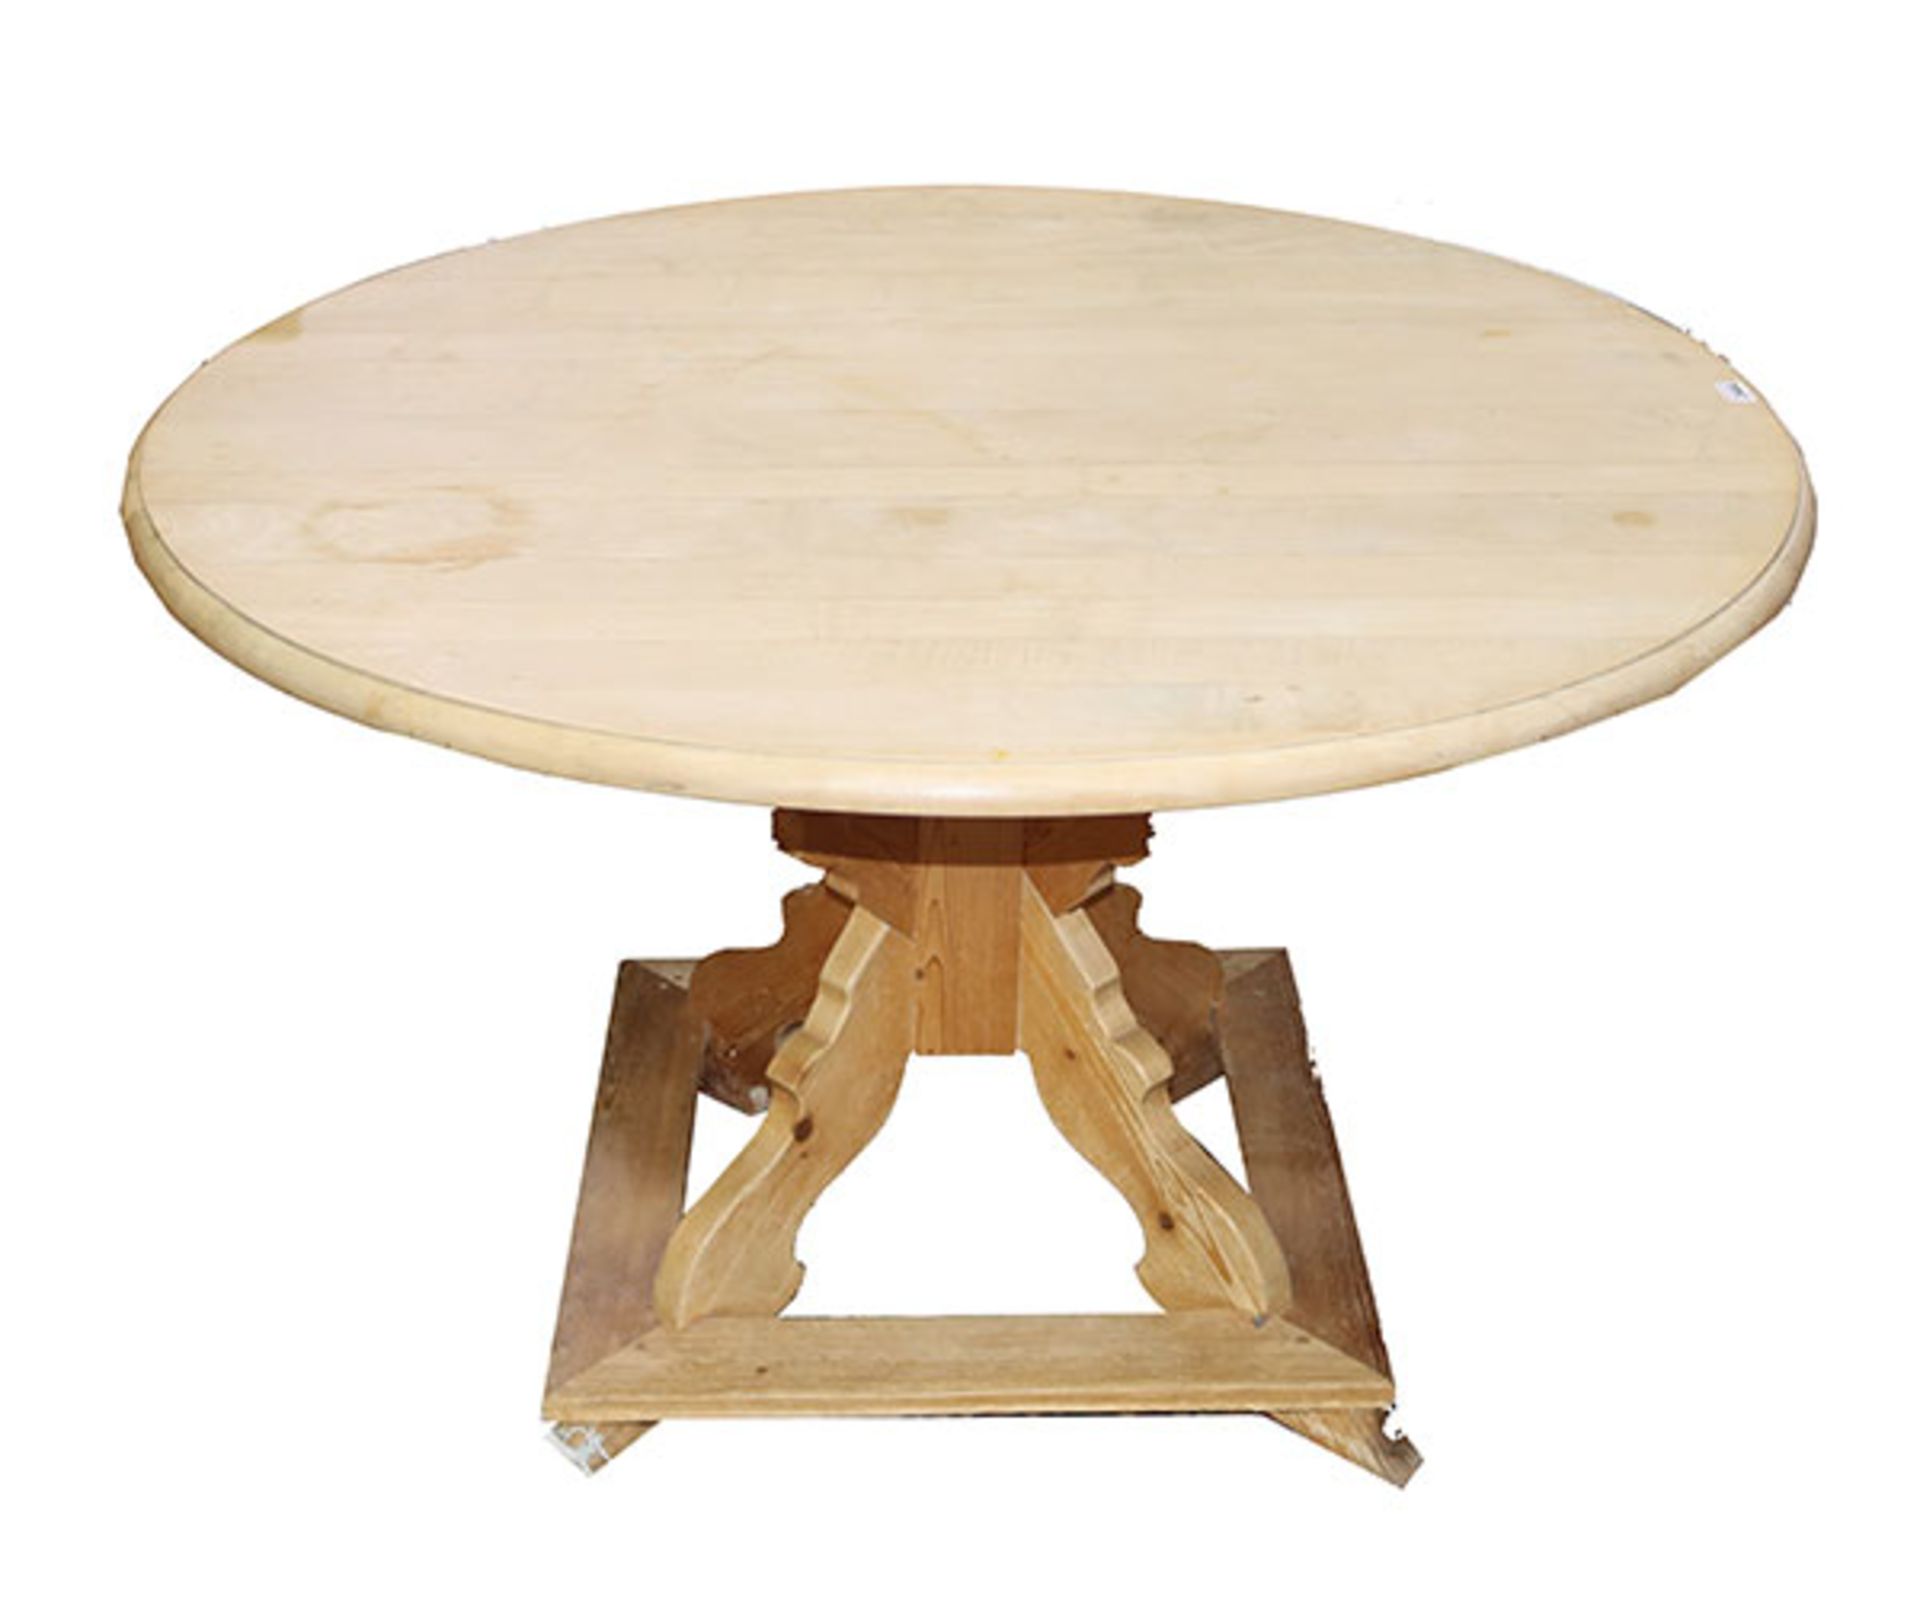 Runder Tisch mit einer Schublade, H 72 cm, D 118 cm, starke Gebrauchs- und Altersspuren, teils